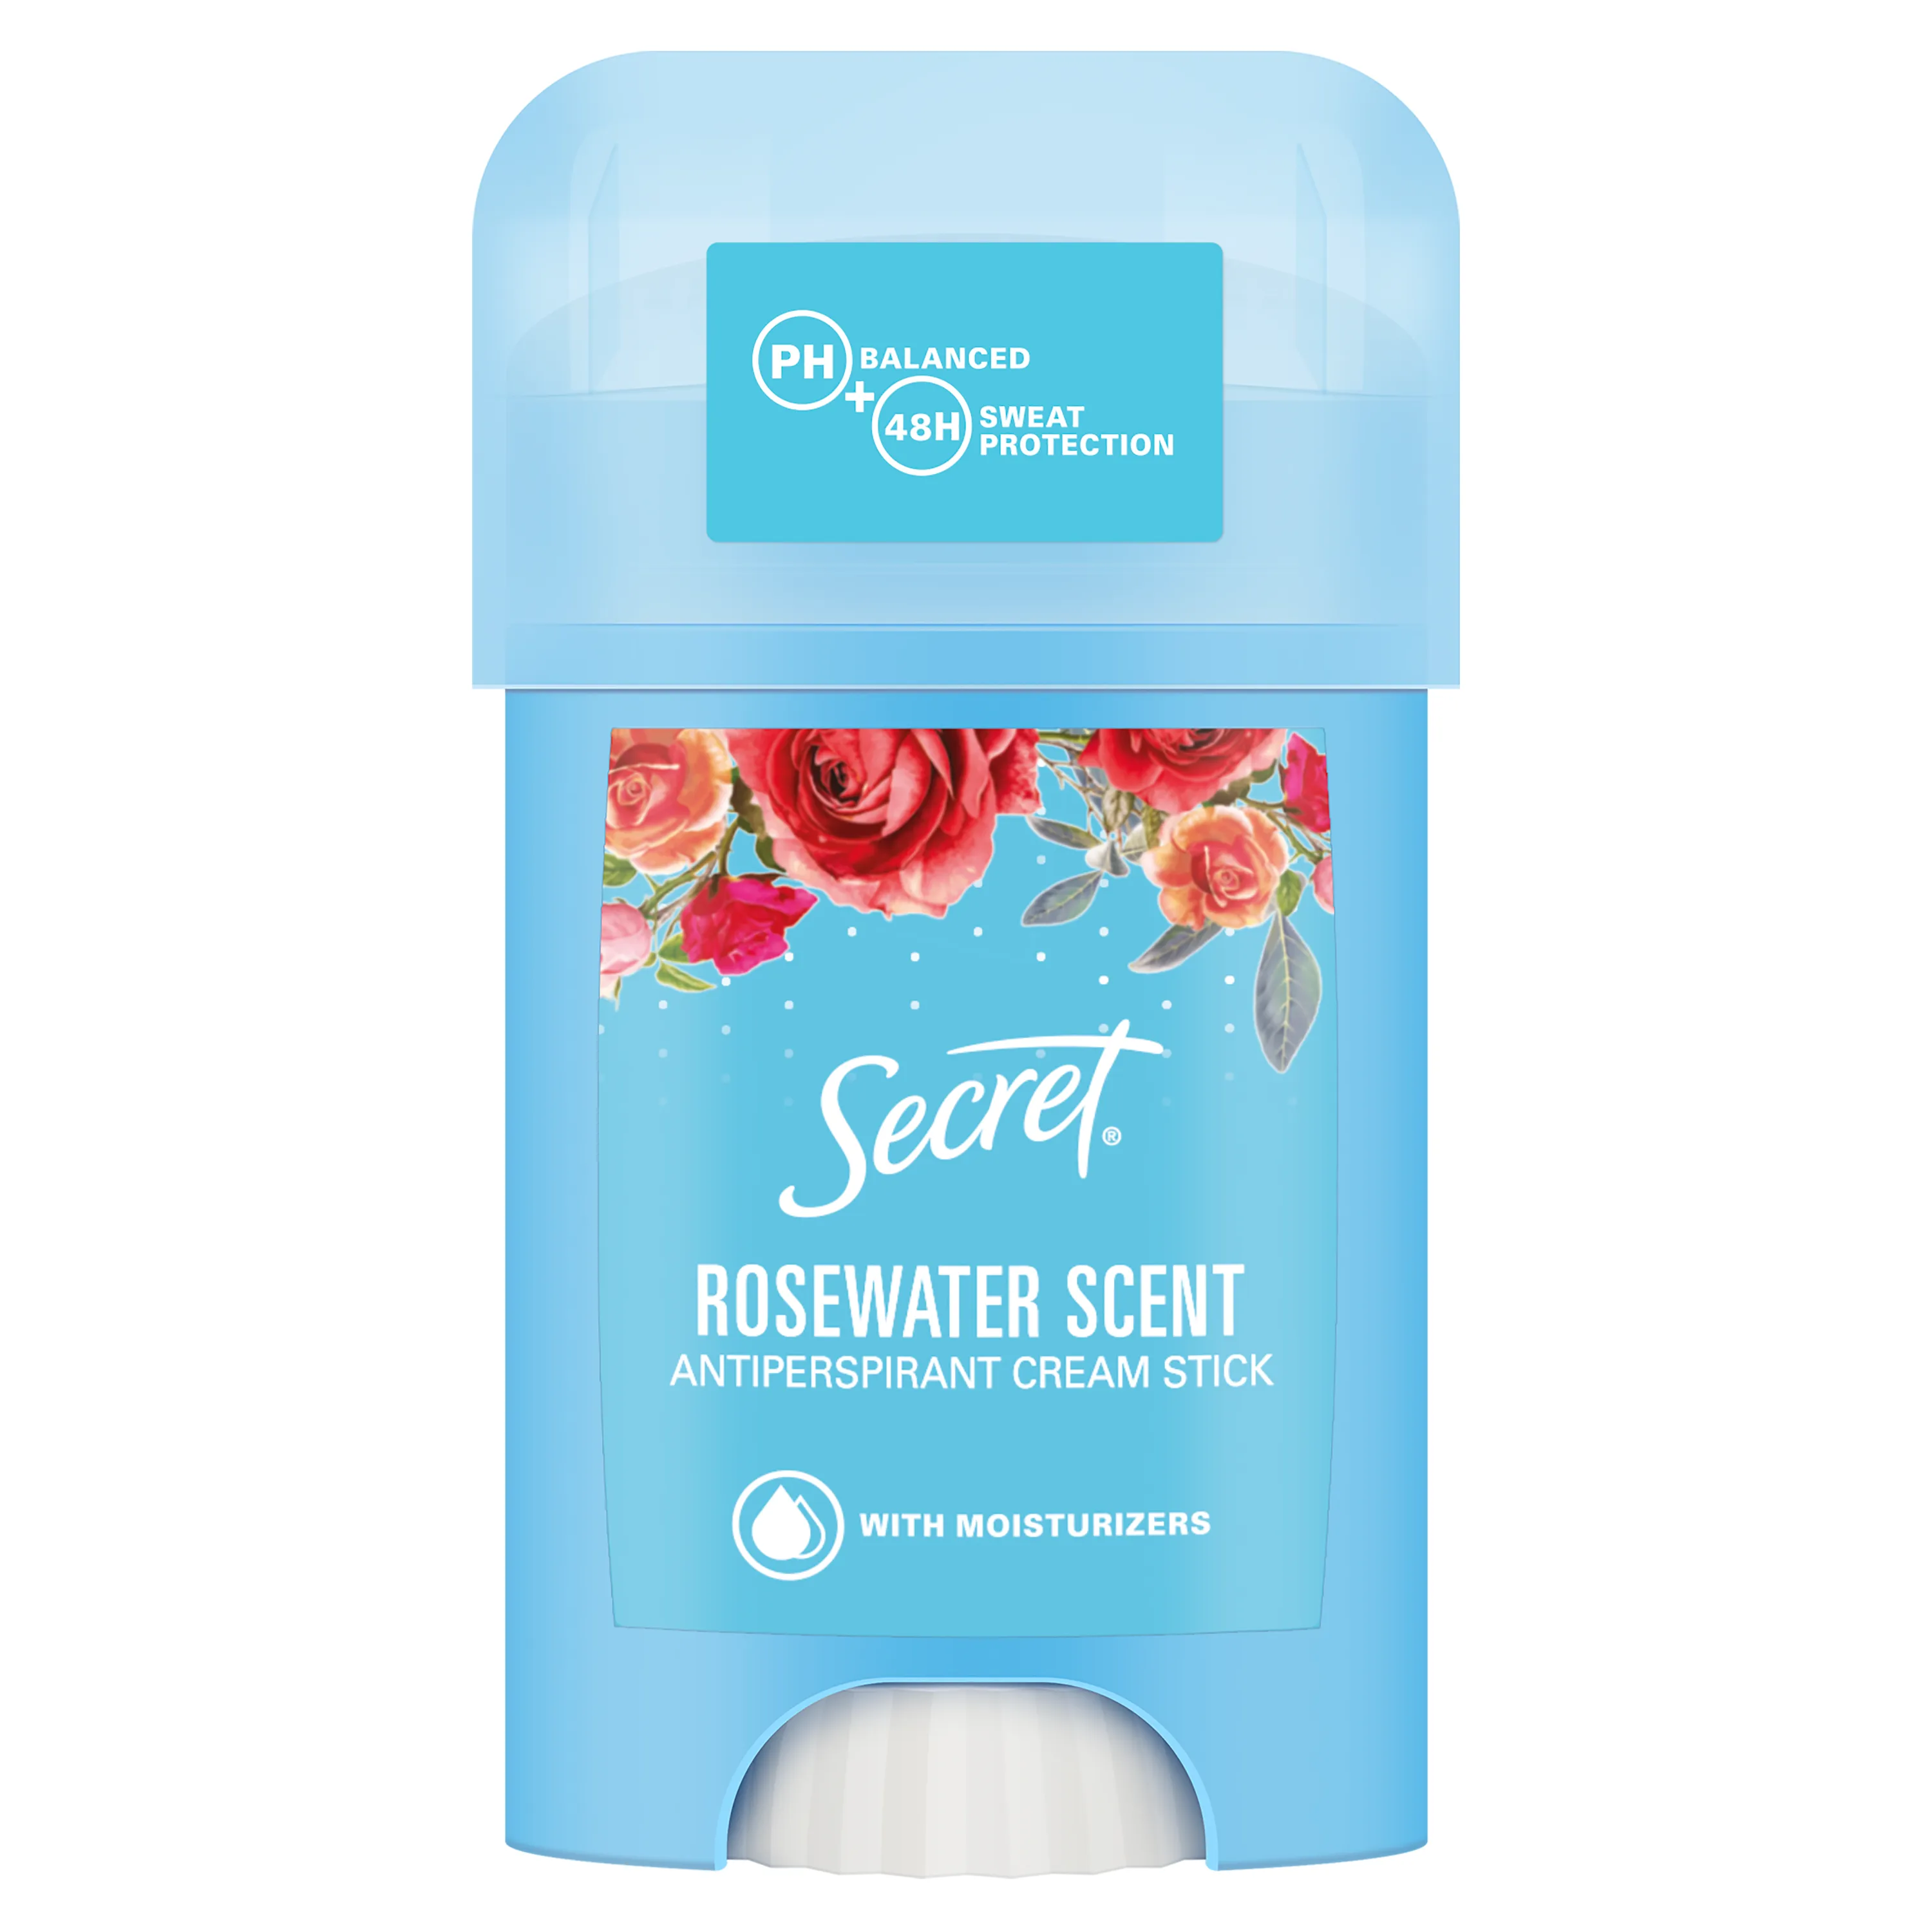 Secret Rose Water Kremowy antyperspirant w sztyfcie dla kobiet, 40 ml